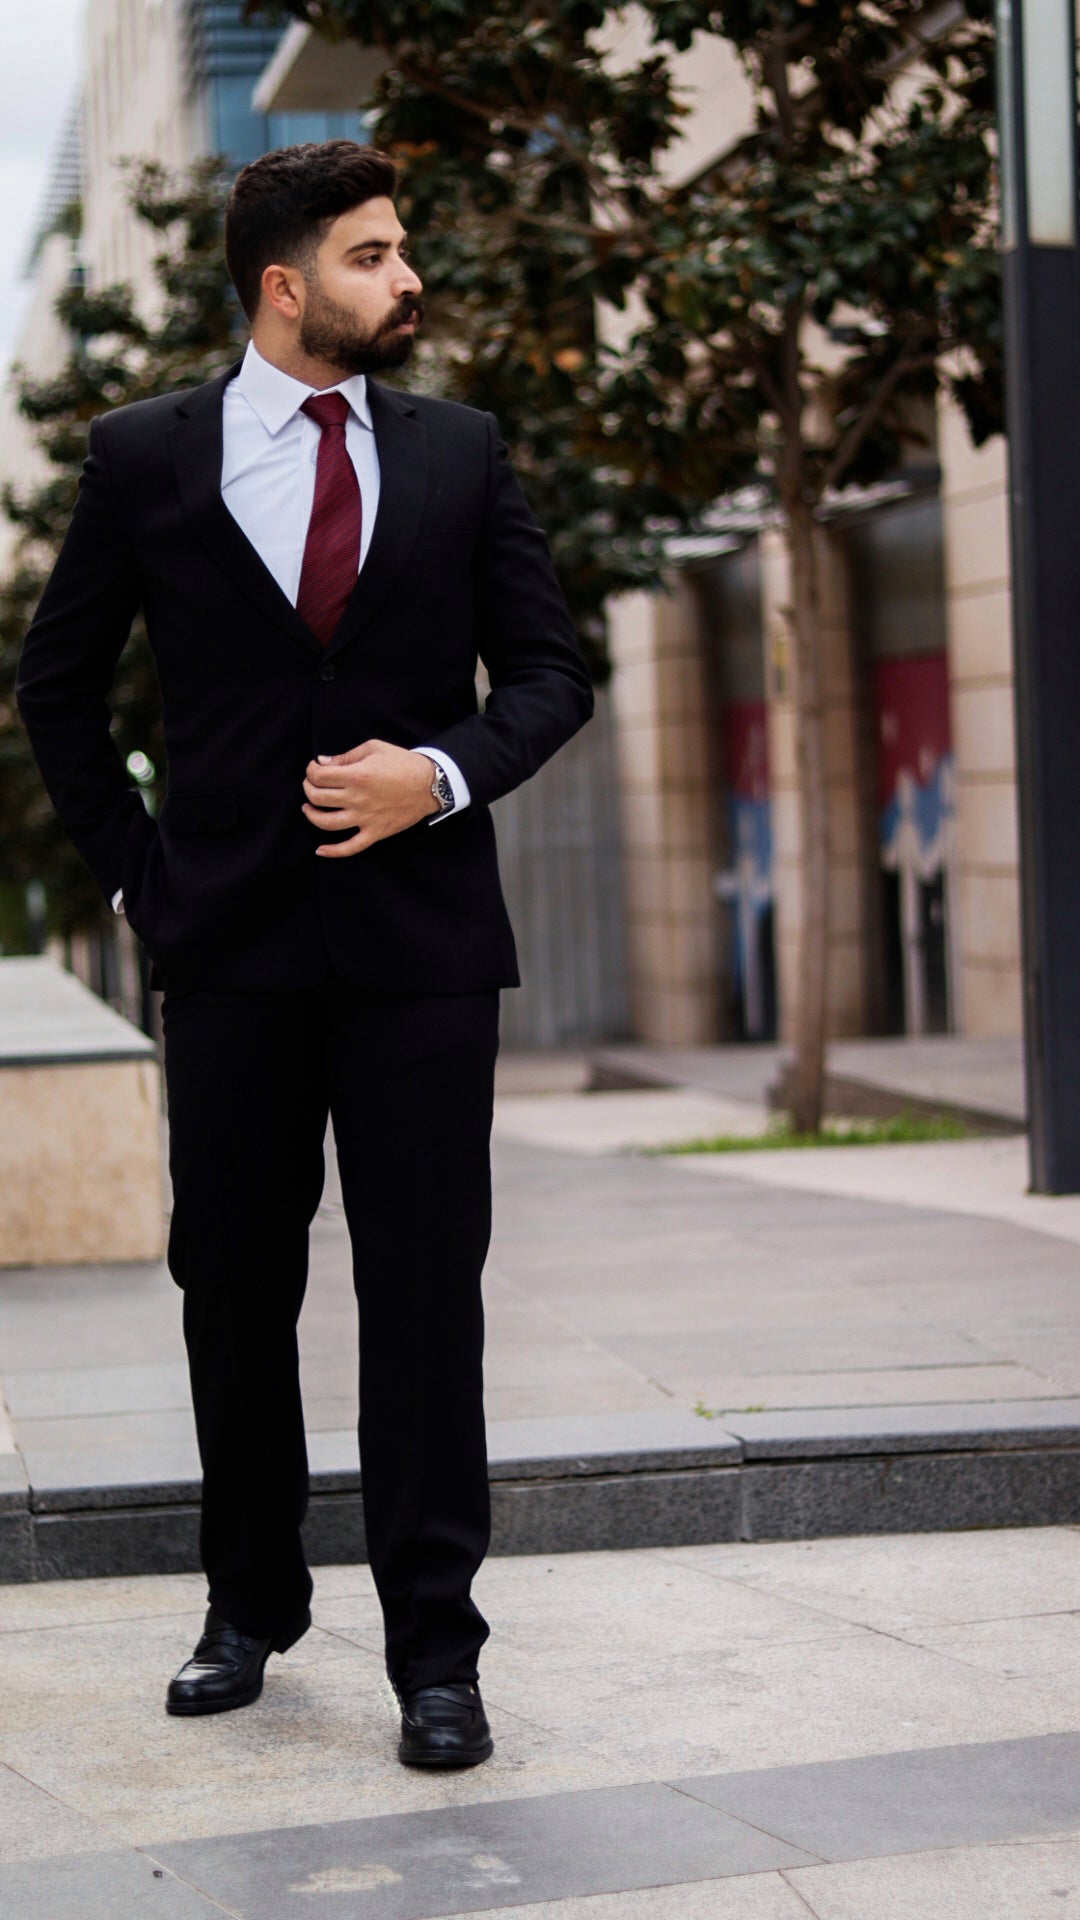 The Decision Maker Suit - High Quality Men's Suit